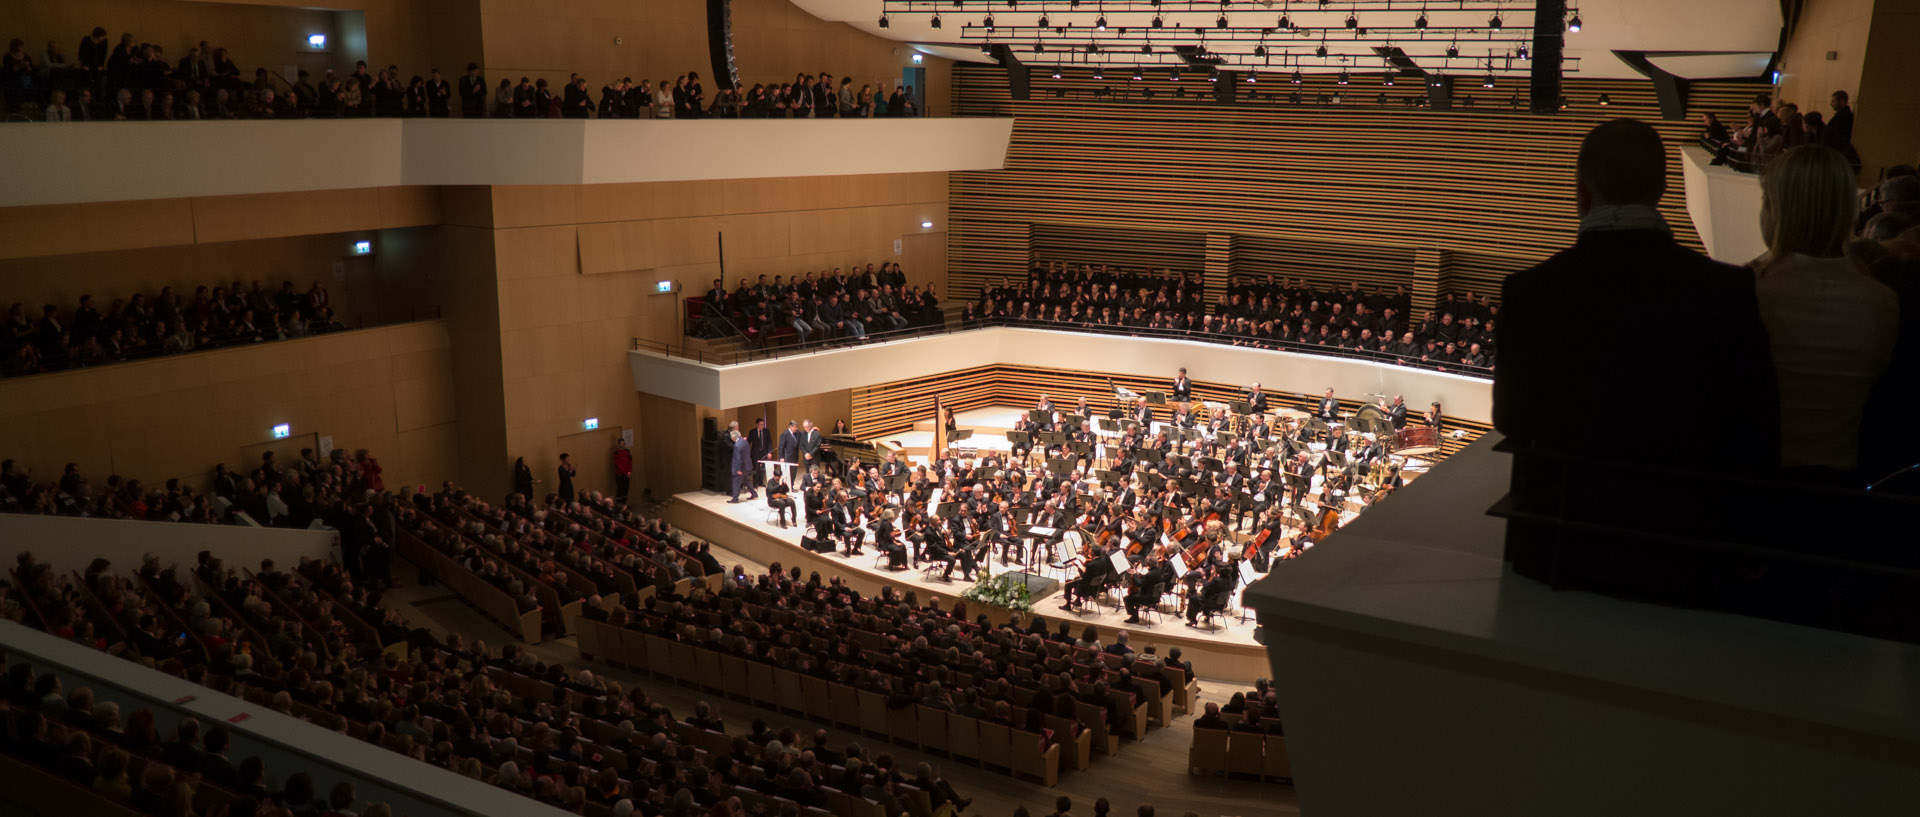 Concert inaugural du nouvel auditorium au Nouveau Siècle, avec l'Orchestre national de Lille.